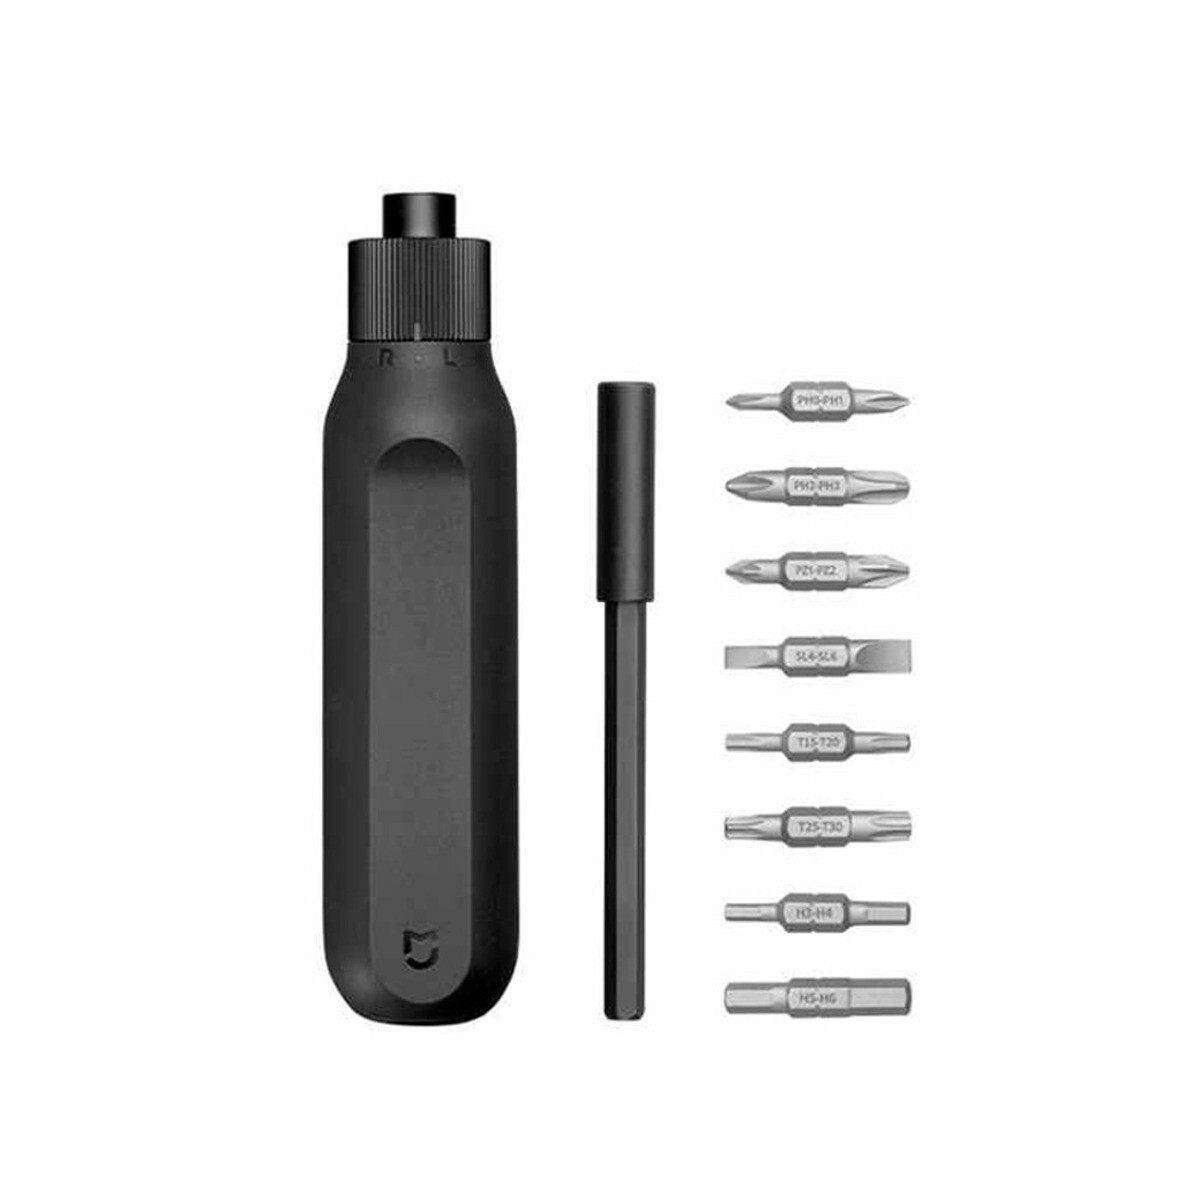 Destornillador xiaomi 16 en 1 - 16 puntas ratchet screwdriver Negro